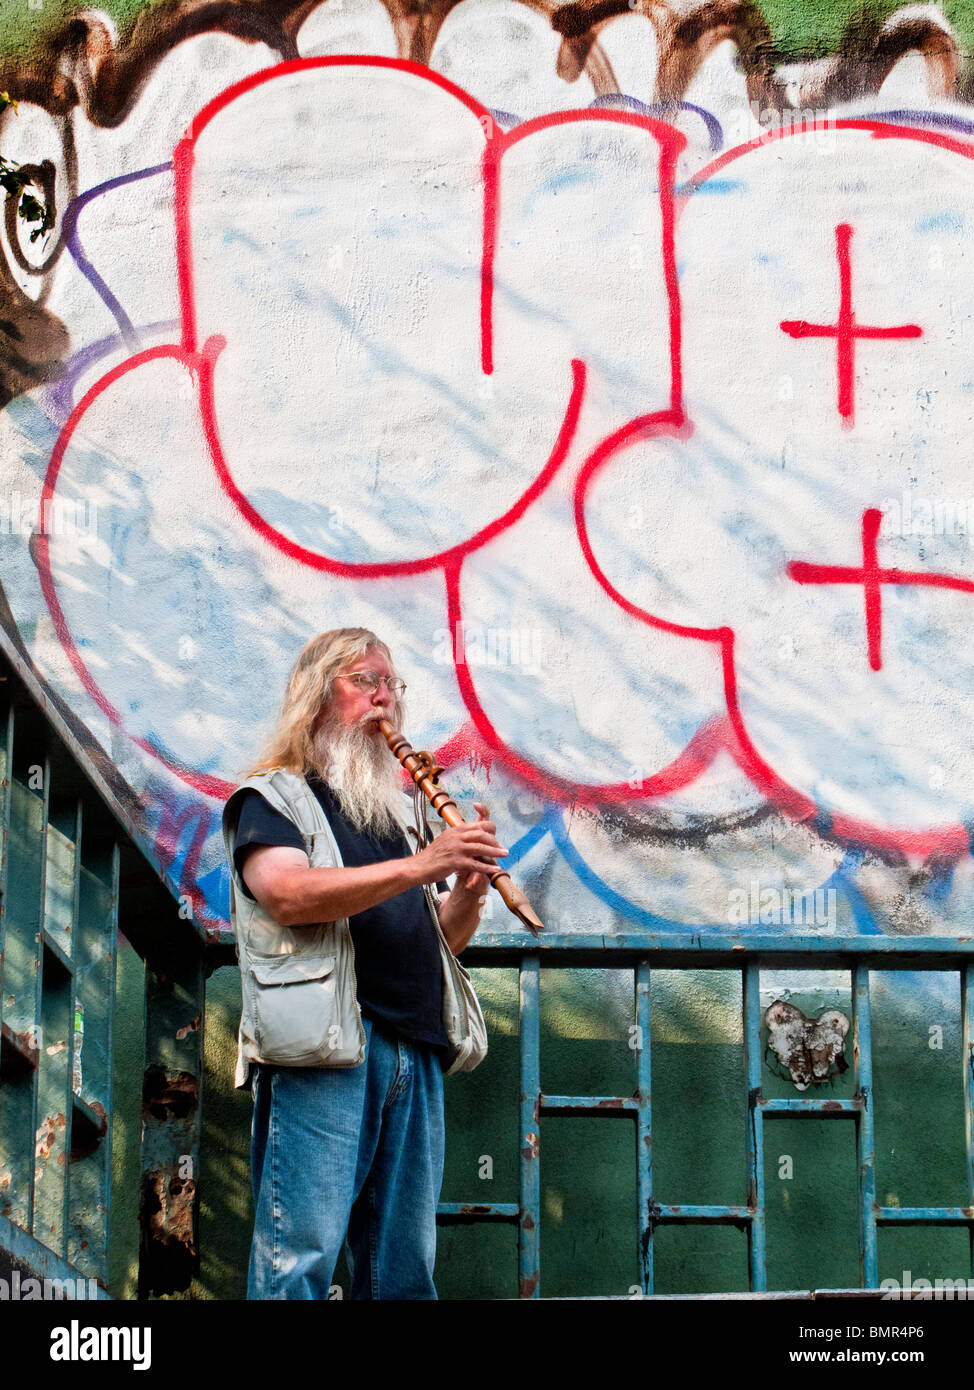 Se yuxtaponen con un gran graffiti de pandillas, un barbudo calle músico toca su flauta en New York City del Lower East Side. Foto de stock